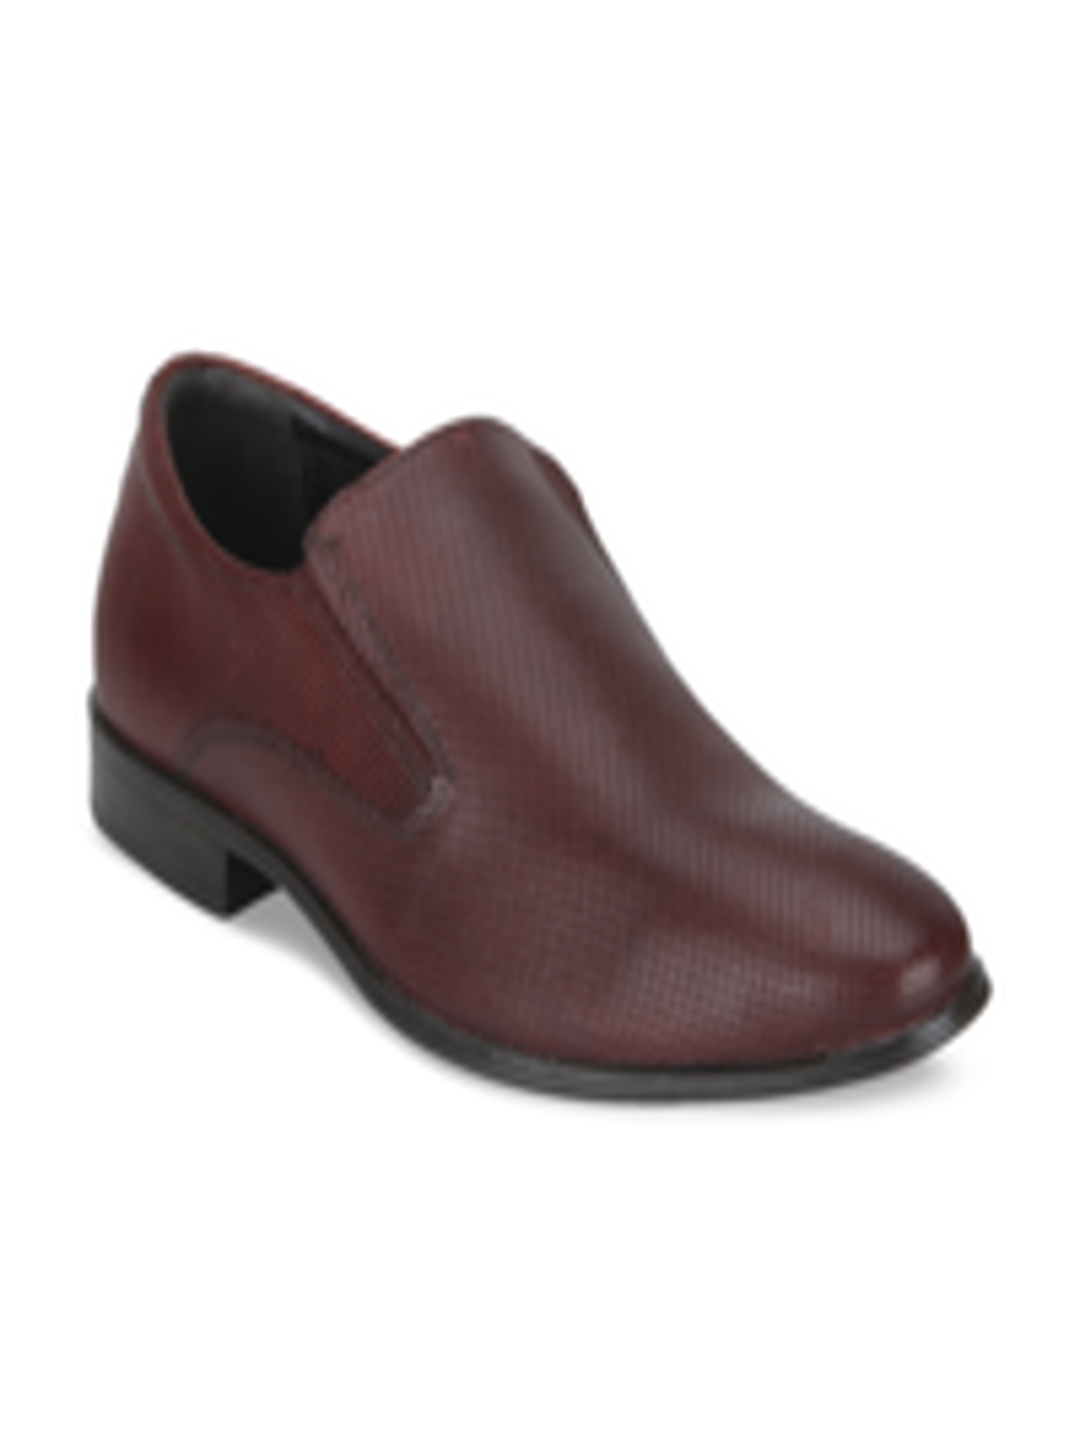 Buy Red Tape Men Tan Brown Semiformal Shoes - Formal Shoes for Men ...